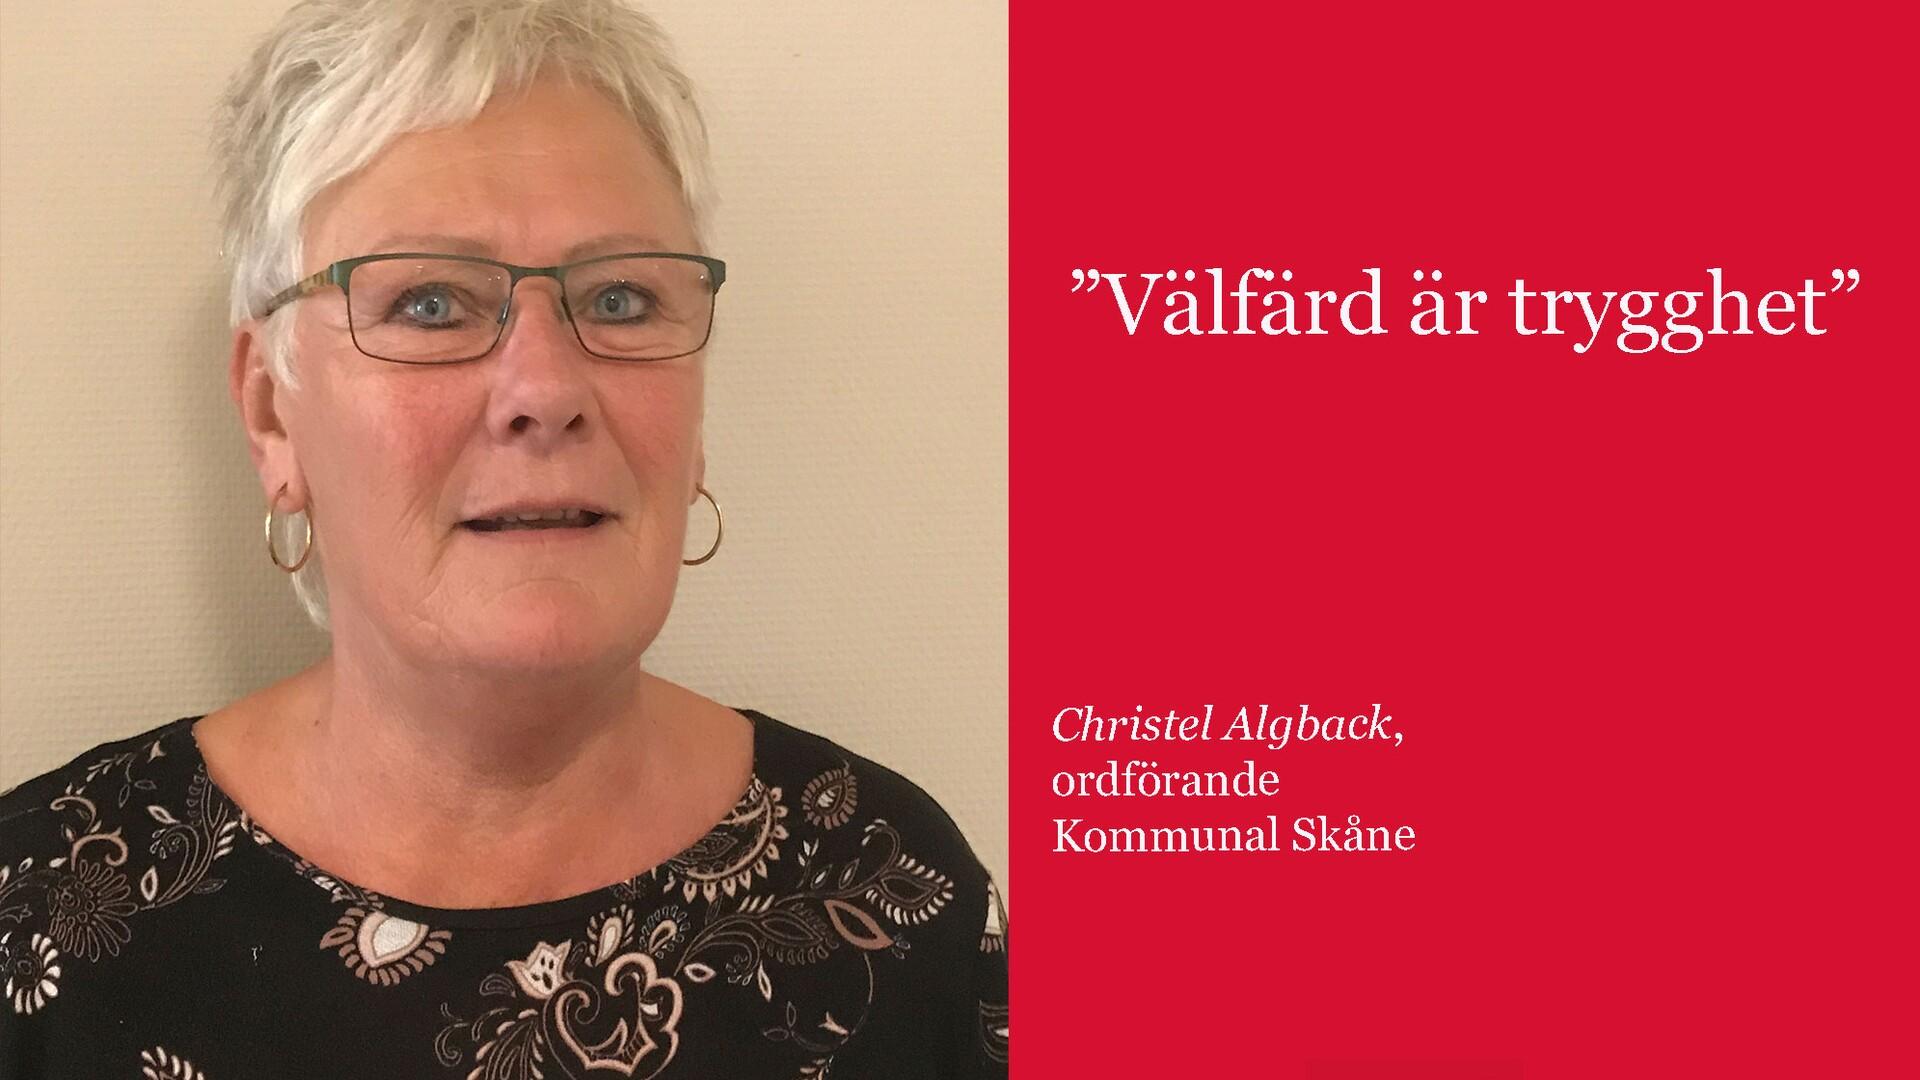 Avdelning Skånes ordförande Christel Algback